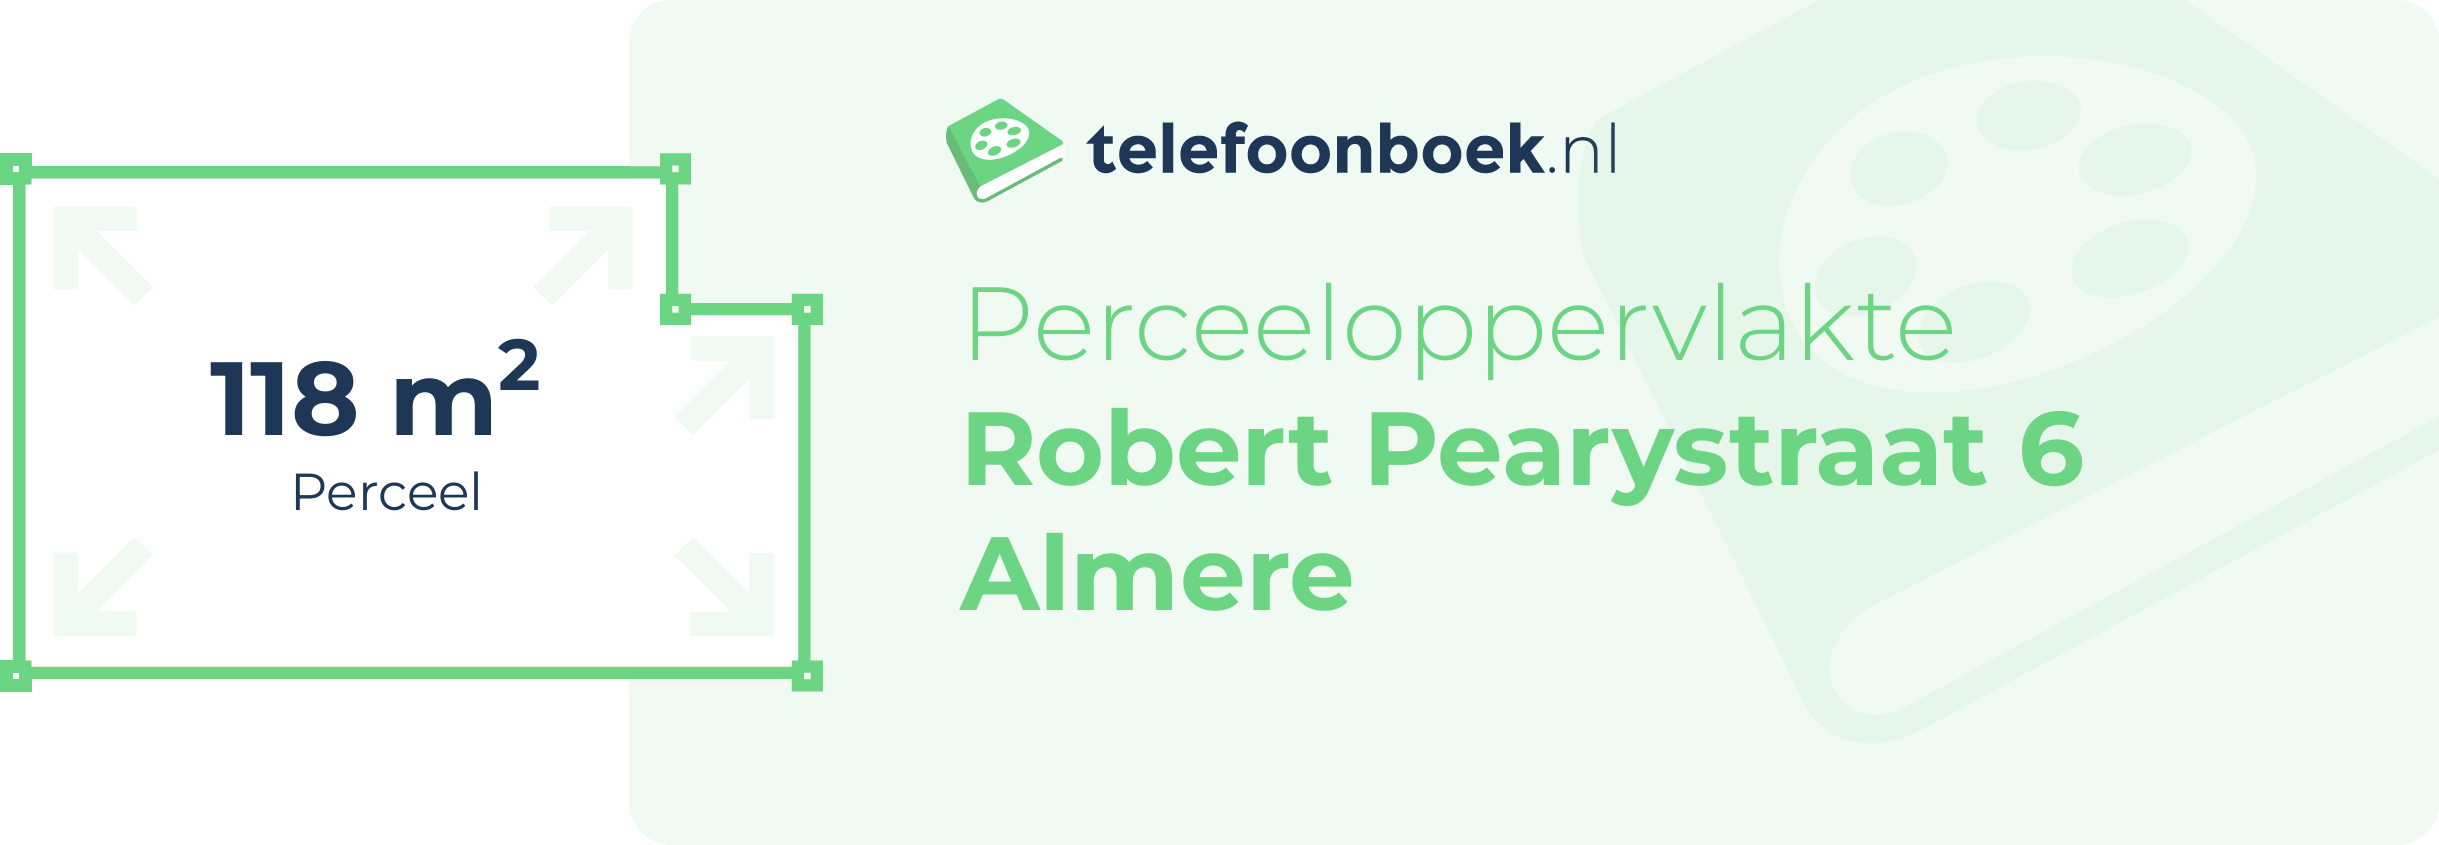 Perceeloppervlakte Robert Pearystraat 6 Almere